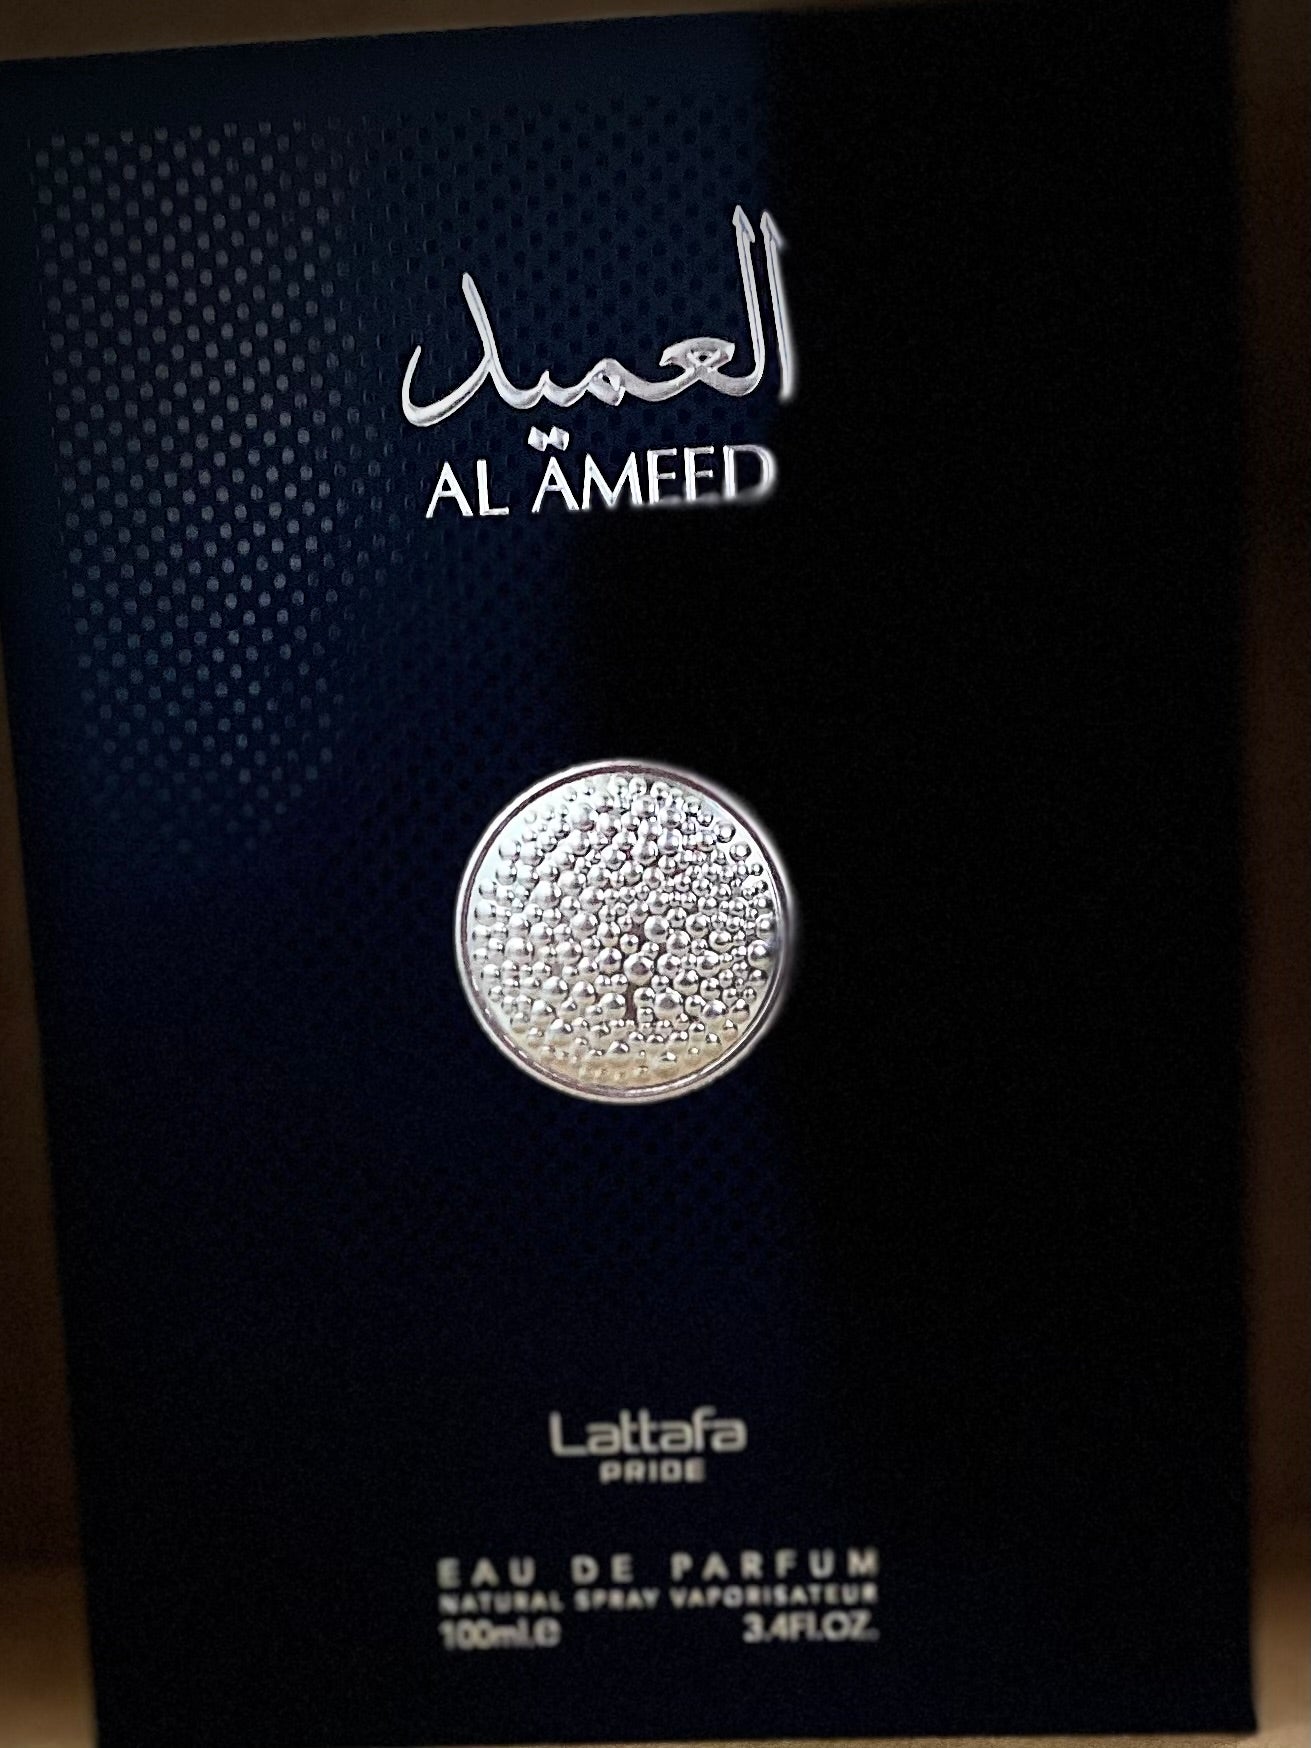 Arabian Fragrances Lattafa pride EDP AL Ameed